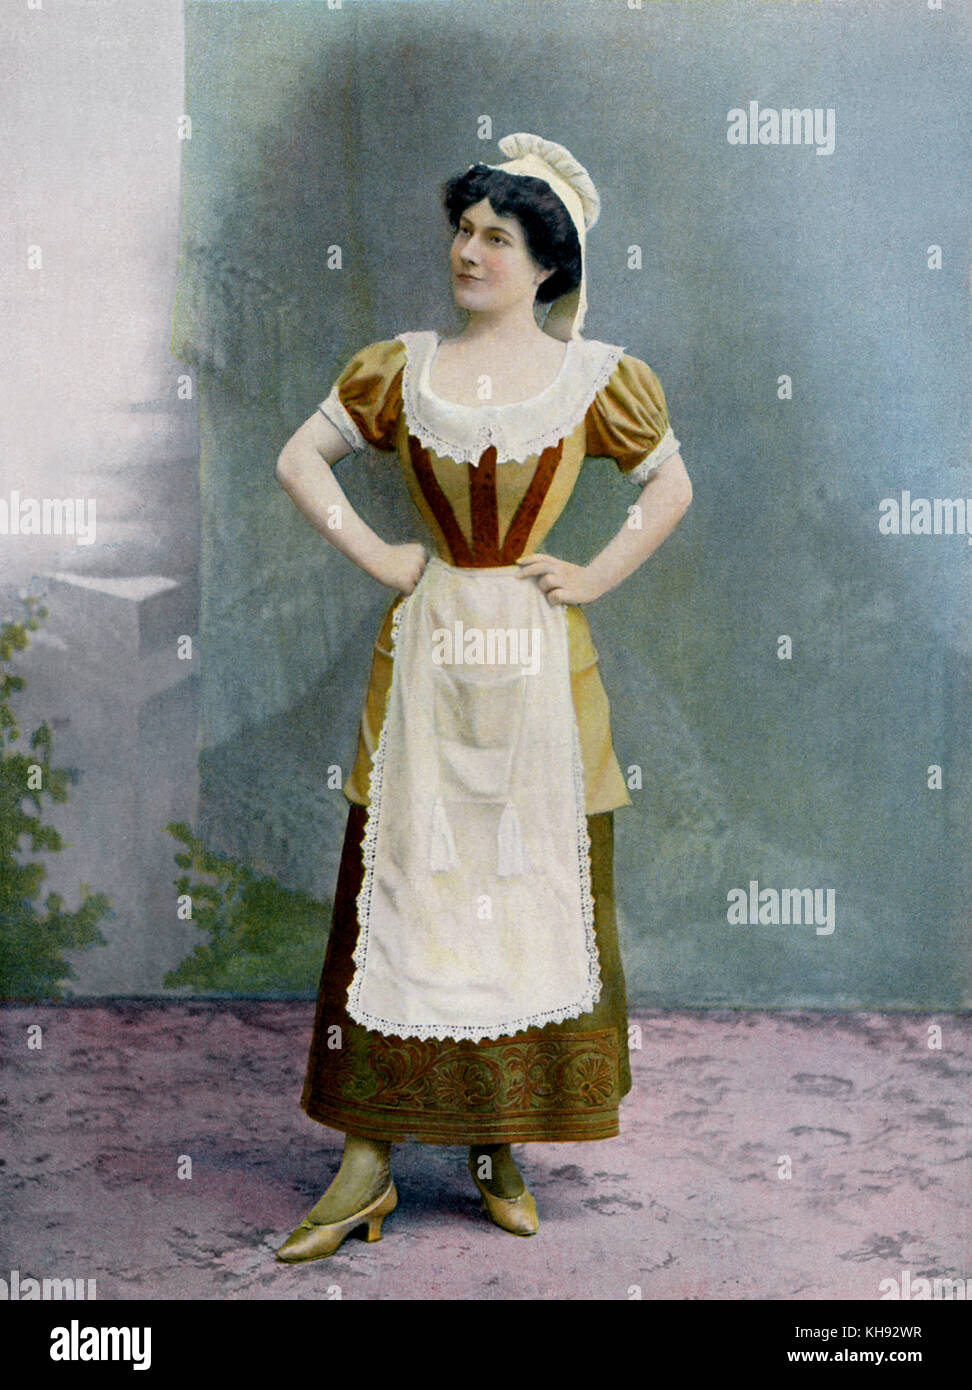 Mlle de Craponne als Lisette in "Le Légataire universel" - Spielen durch Jean-François Regnard (ursprünglich 1708). Produktion am Théatre National de l'Opéra-comique, C. 1901. Stockfoto